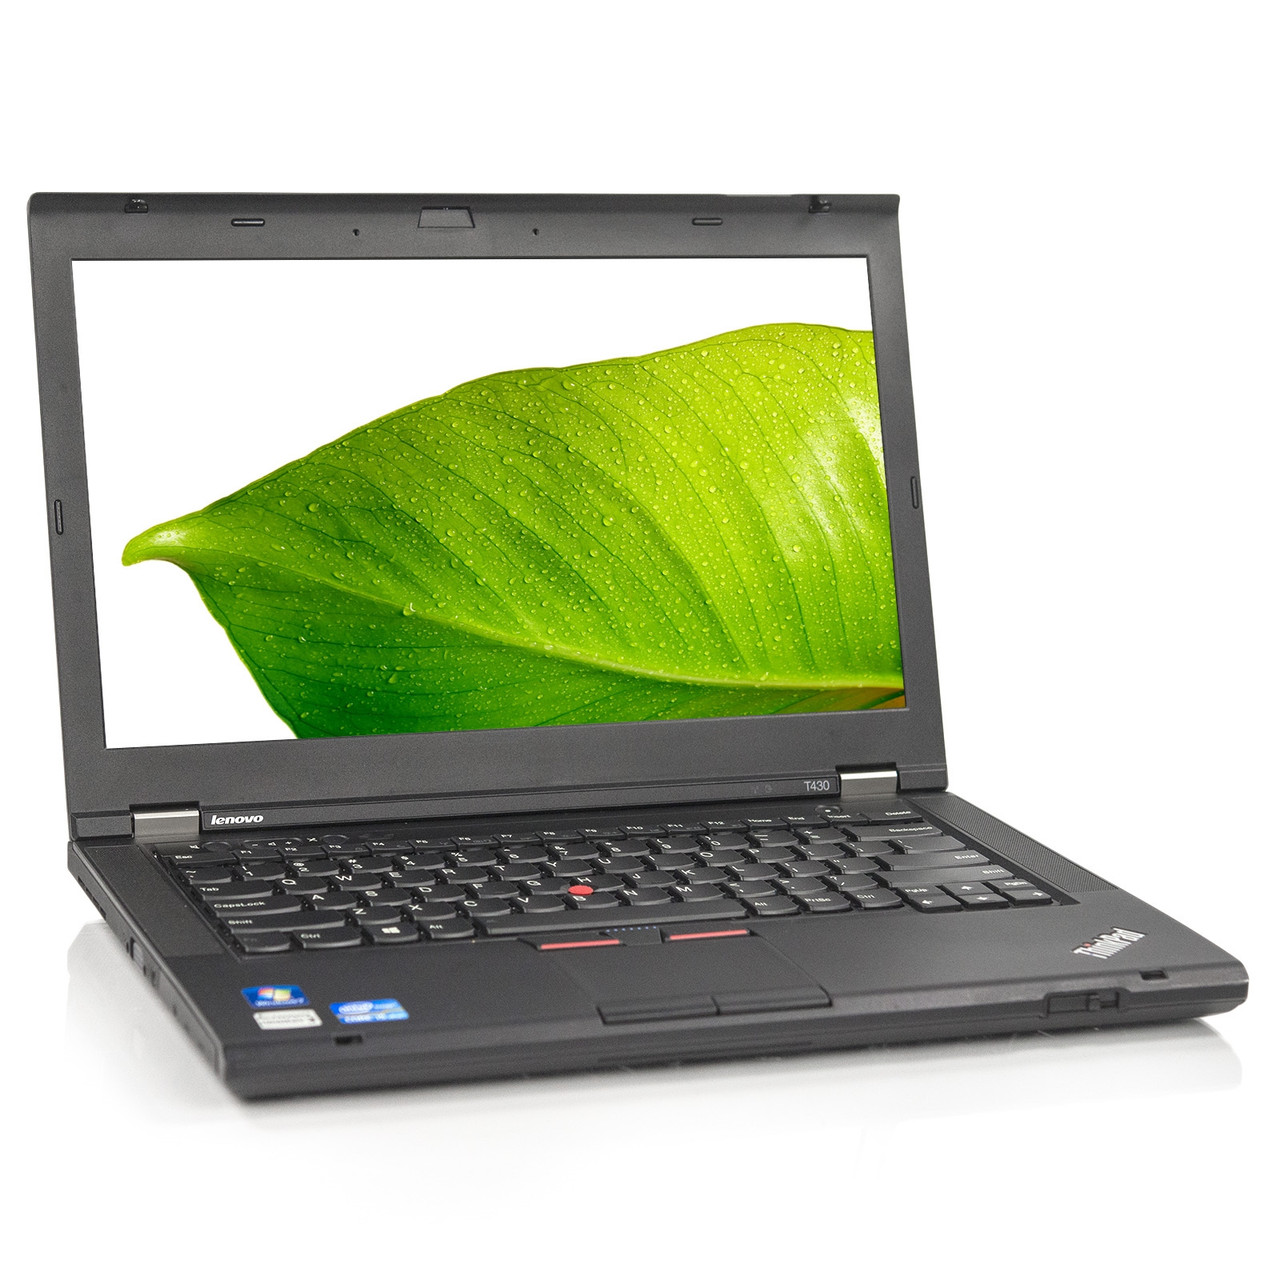 Ideelt Continental Kritisk Lenovo ThinkPad T430 Laptop i5 Dual-Core 8GB 256GB SSD Win 10 Pro | Revive  IT